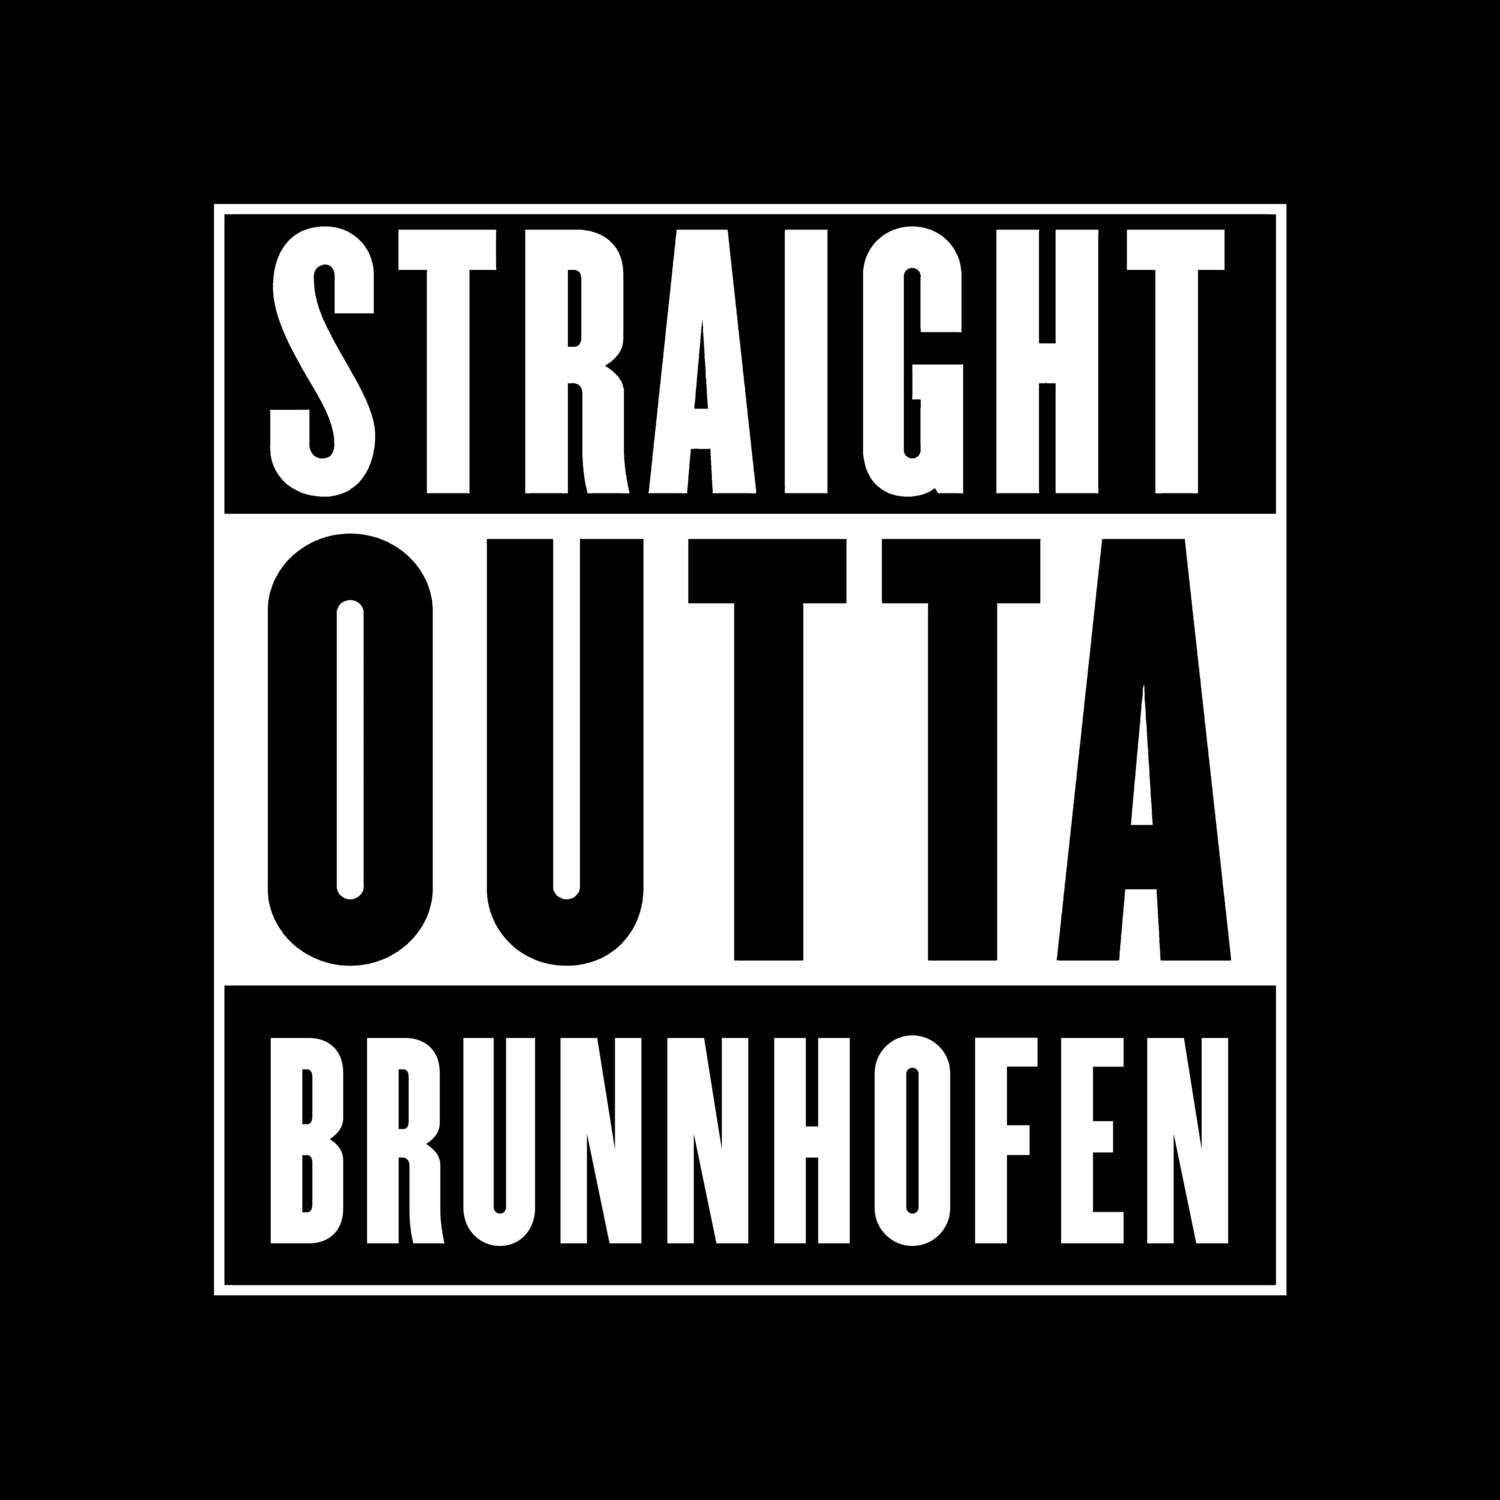 Brunnhofen T-Shirt »Straight Outta«